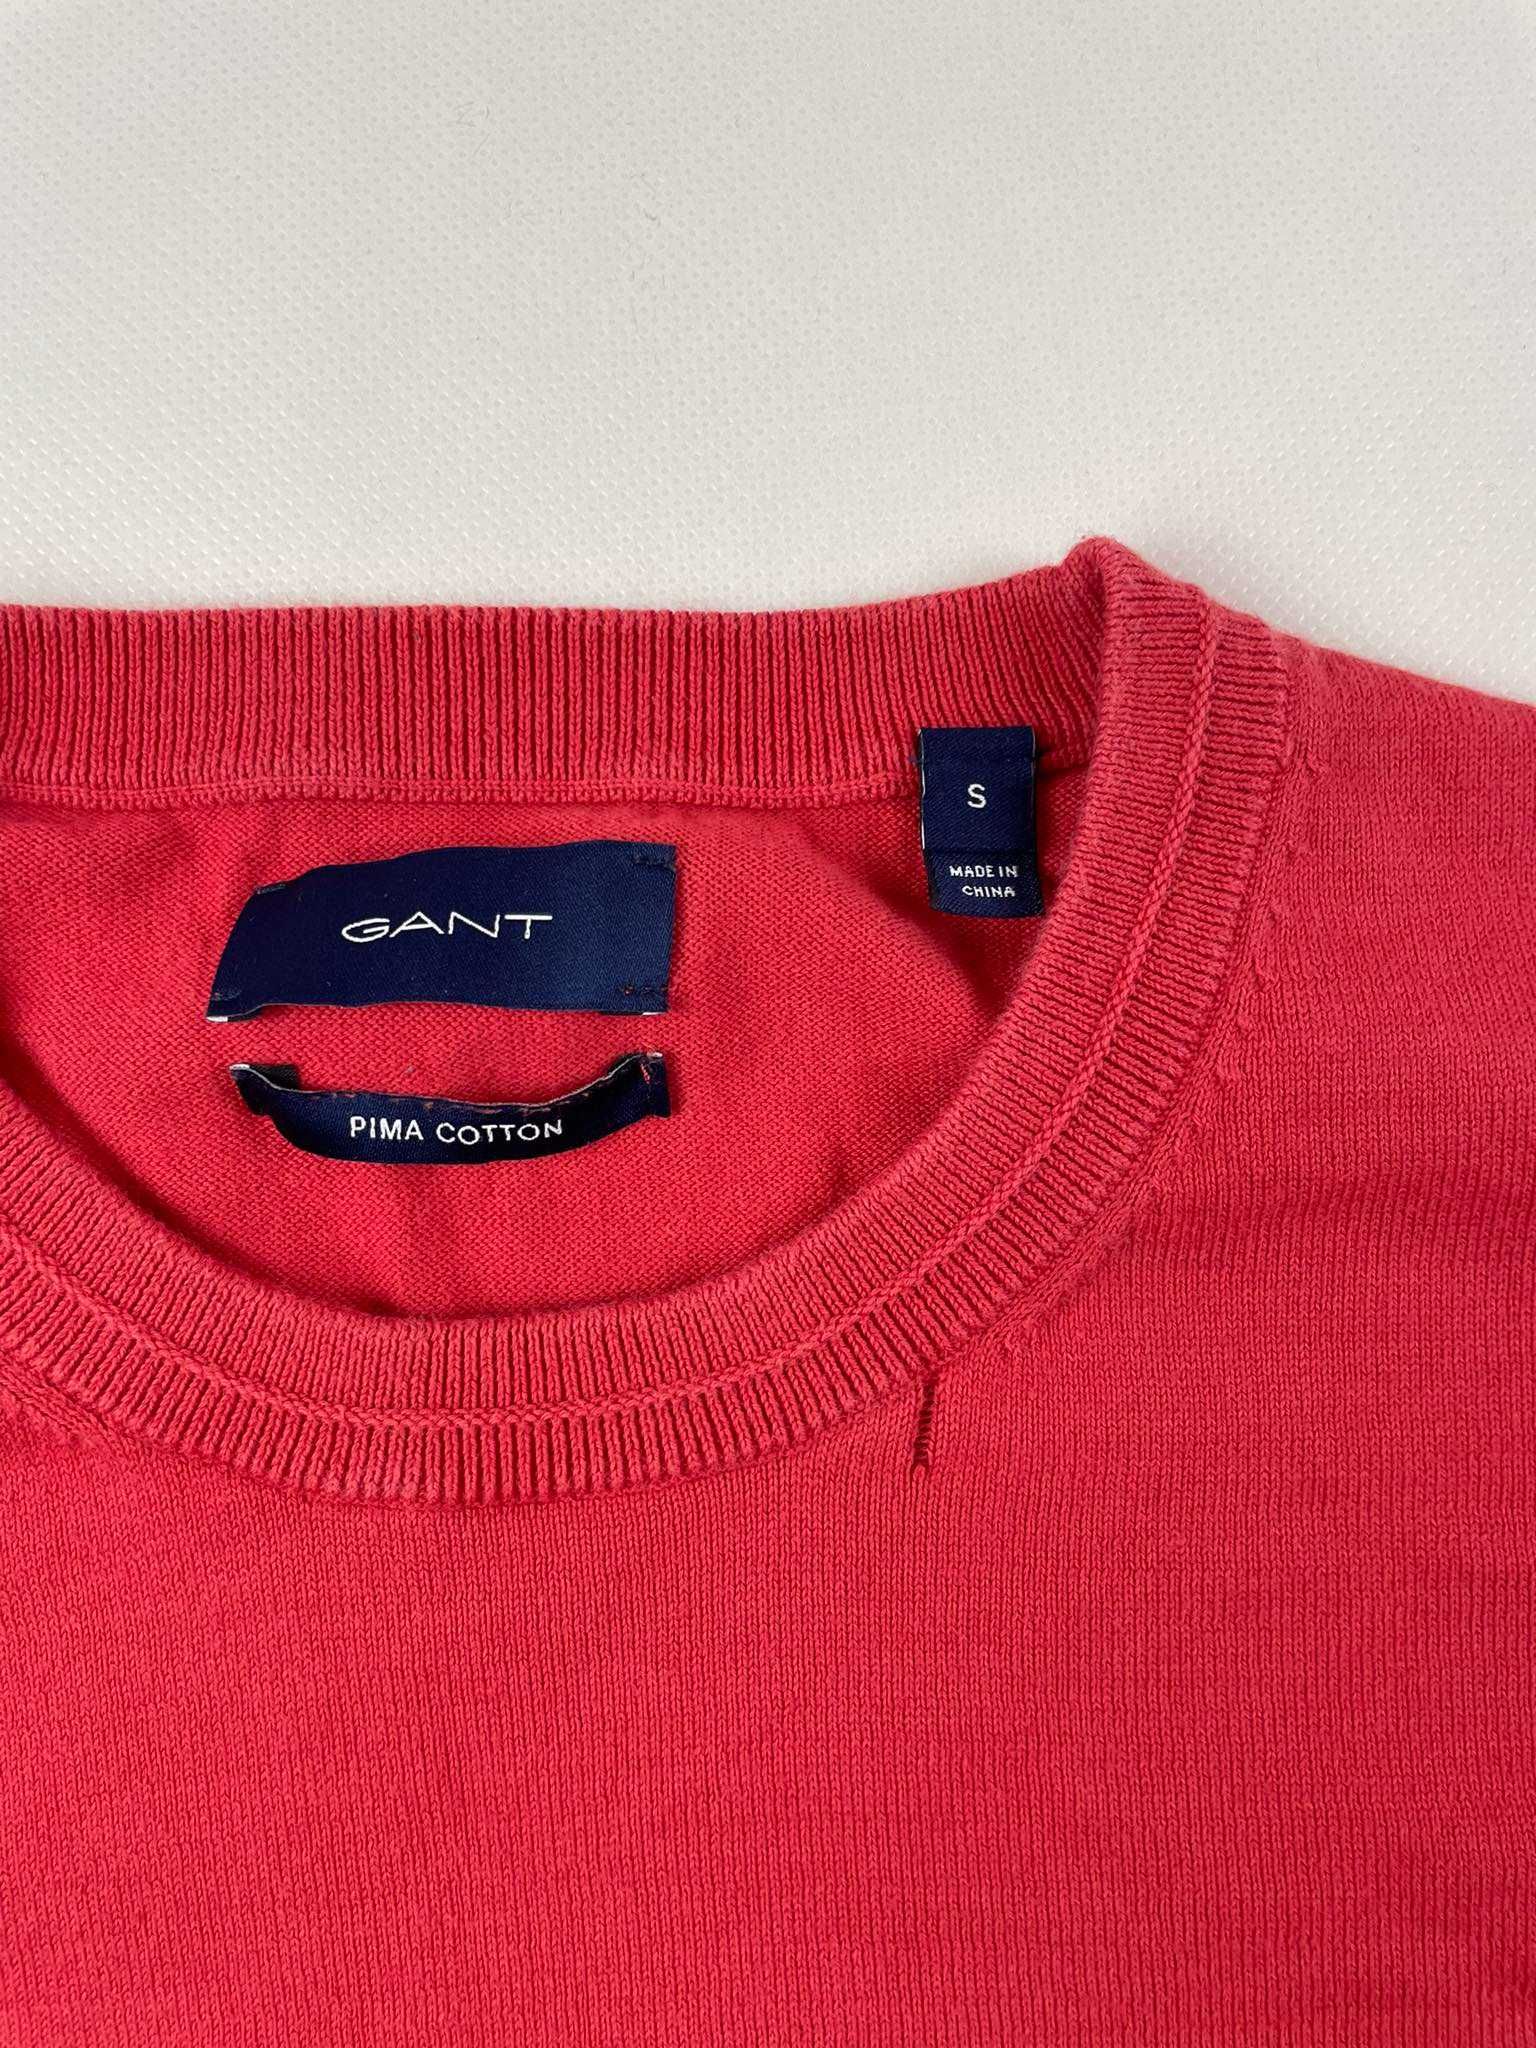 Sweter Gant Pima Cotton S czerwony